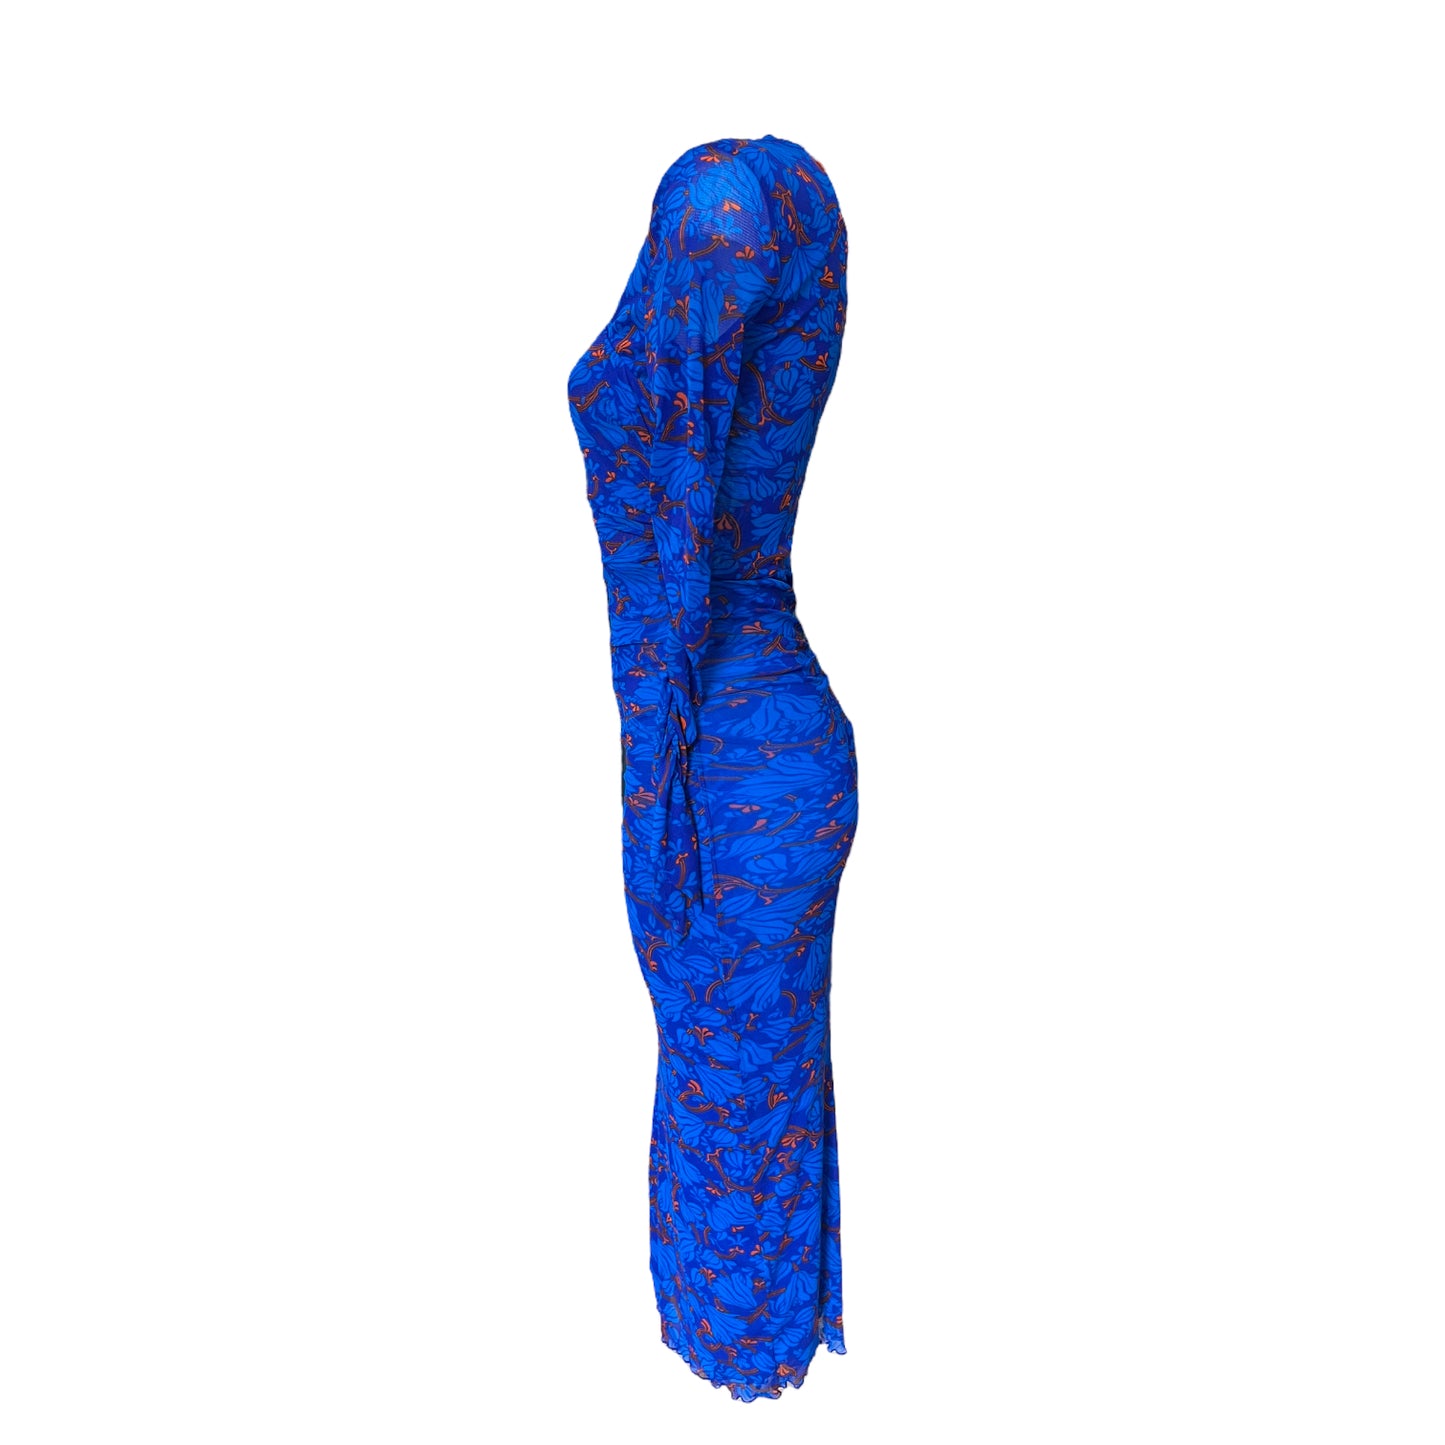 Diane Von Furstenberg Blue and Coral Dress